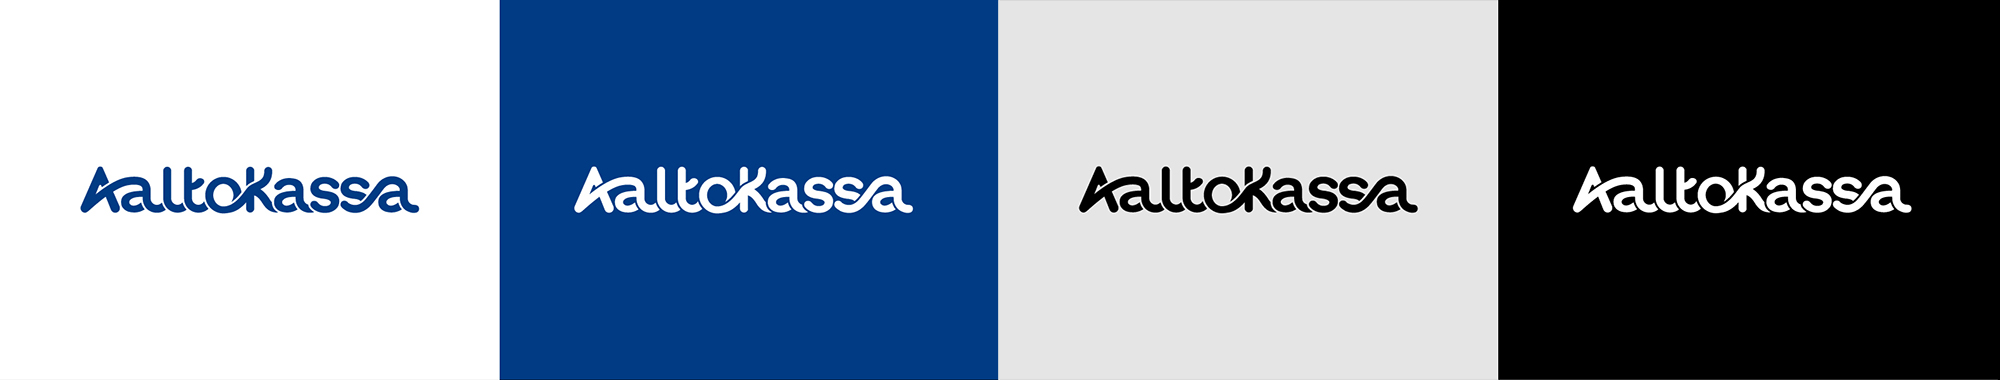 Aaltokassa_logo_small